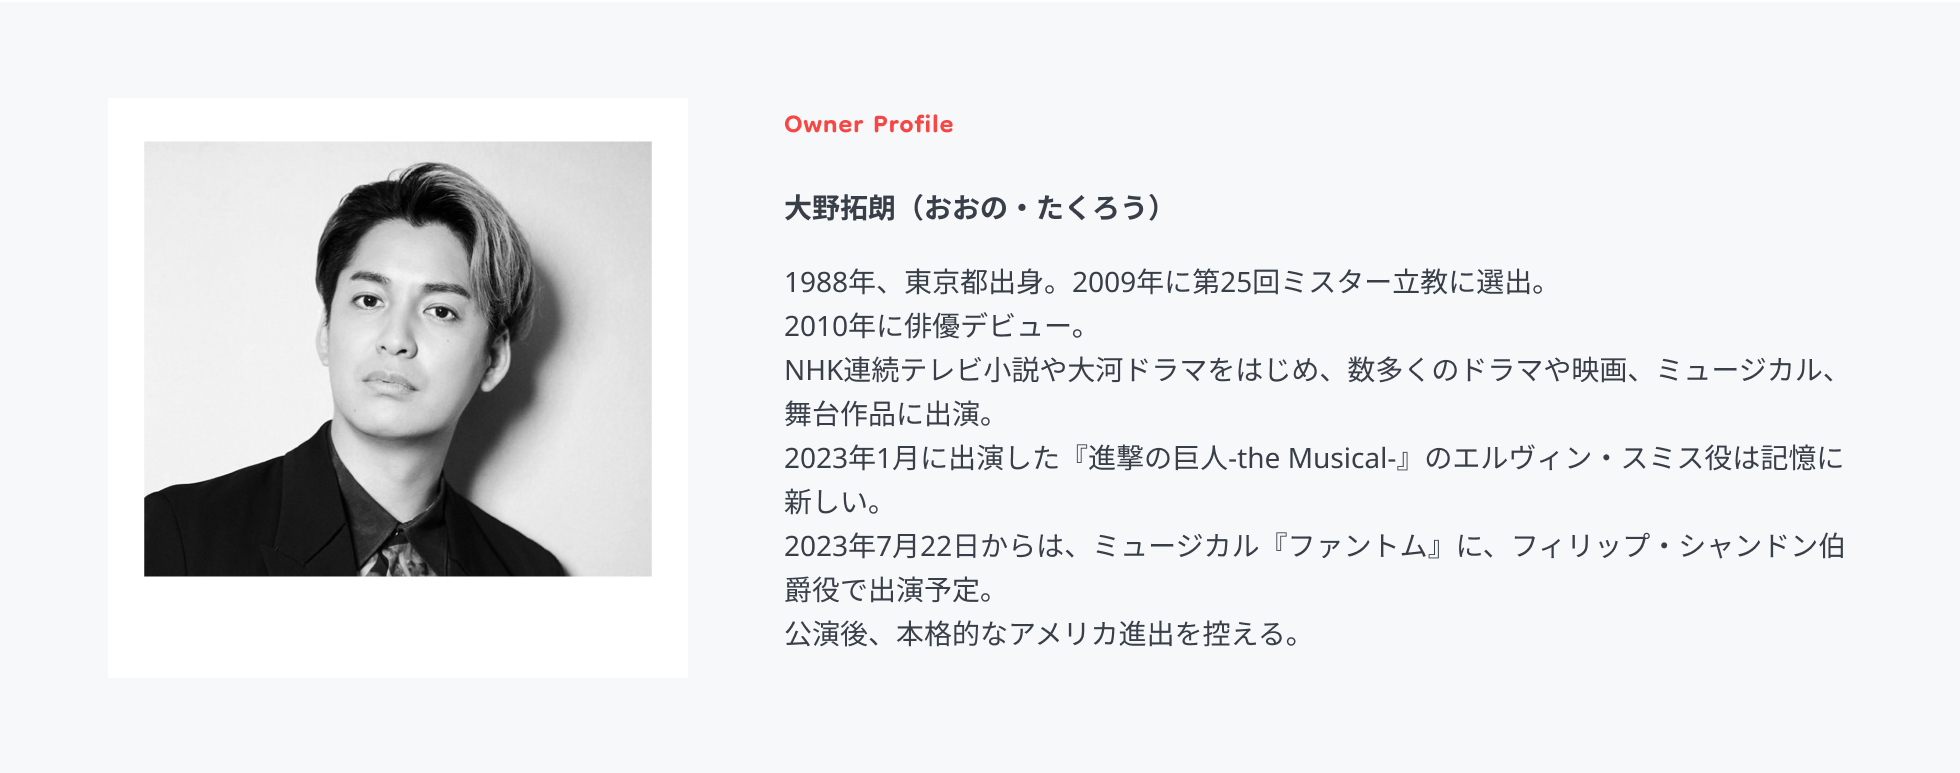 Owner Profile 大野拓朗（おおの・たくろう）1988年、東京都出身。2009年に第25回ミスター立教に選出。2010年に俳優デビュー。 NHK連続テレビ小説や大河ドラマをはじめ、数多くのドラマや映画、ミュージカル、舞台作品に出演。 2023年1月に出演した『進撃の巨人-the Musical-』のエルヴィン・スミス役は記憶に新しい。 2023年7月22日からは、ミュージカル『ファントム』に、フィリップ・シャンドン伯爵役で出演予定。 公演後、本格的なアメリカ進出を控える。